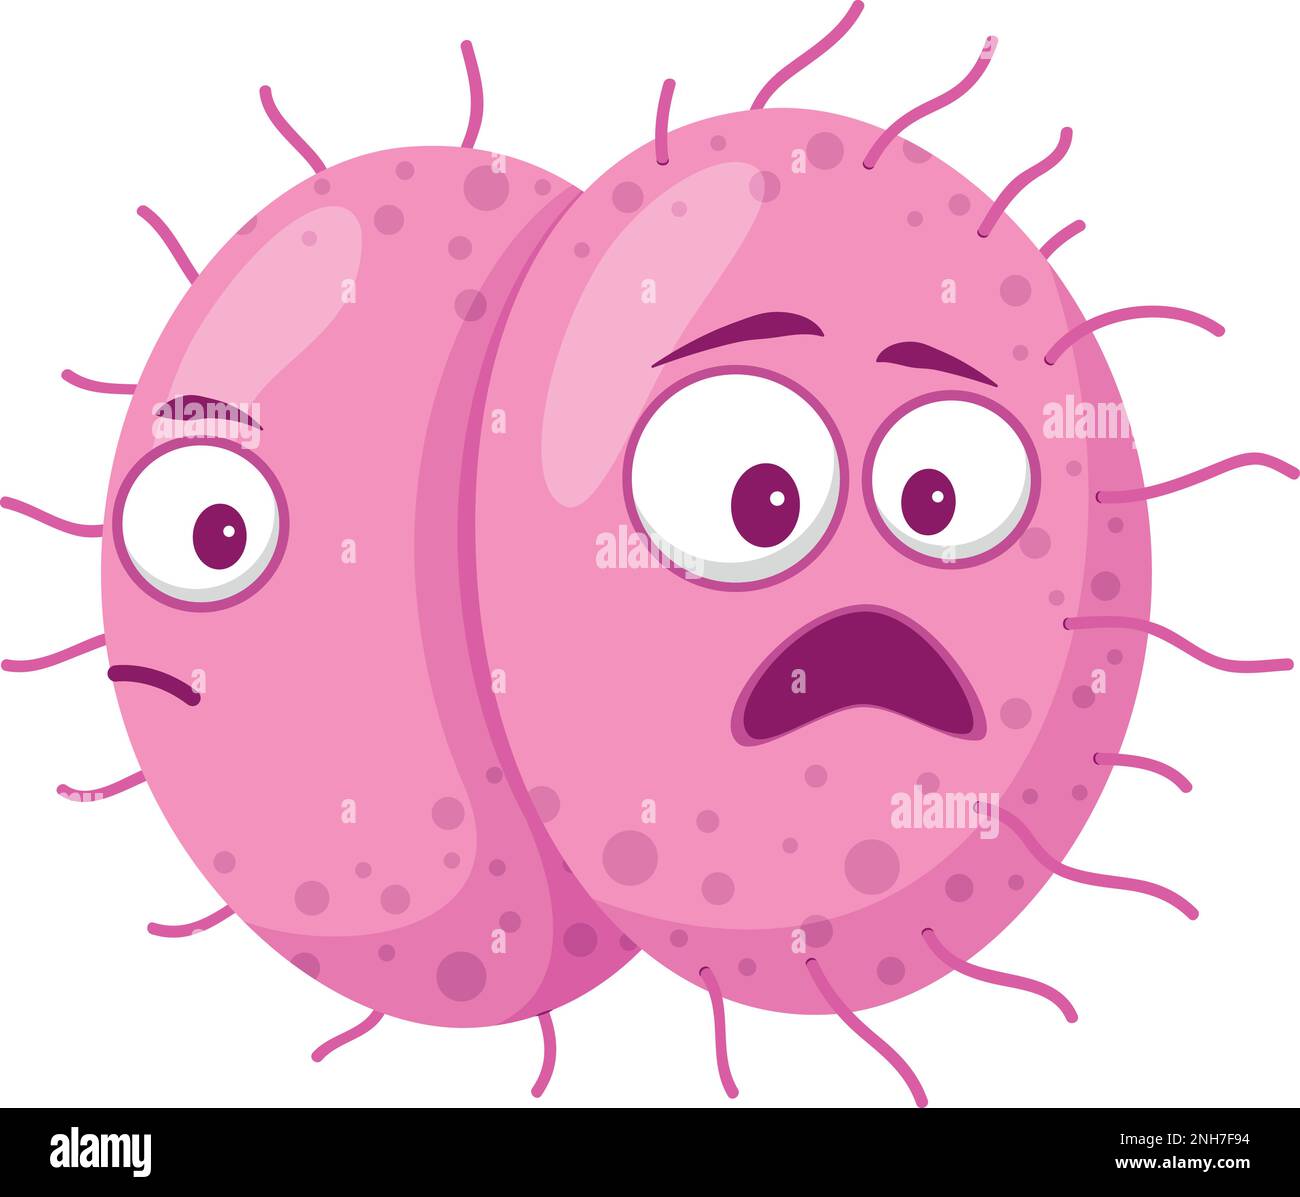 Illustrazione vettoriale di un virus Meningococcico in stile cartoon isolato su sfondo bianco Illustrazione Vettoriale